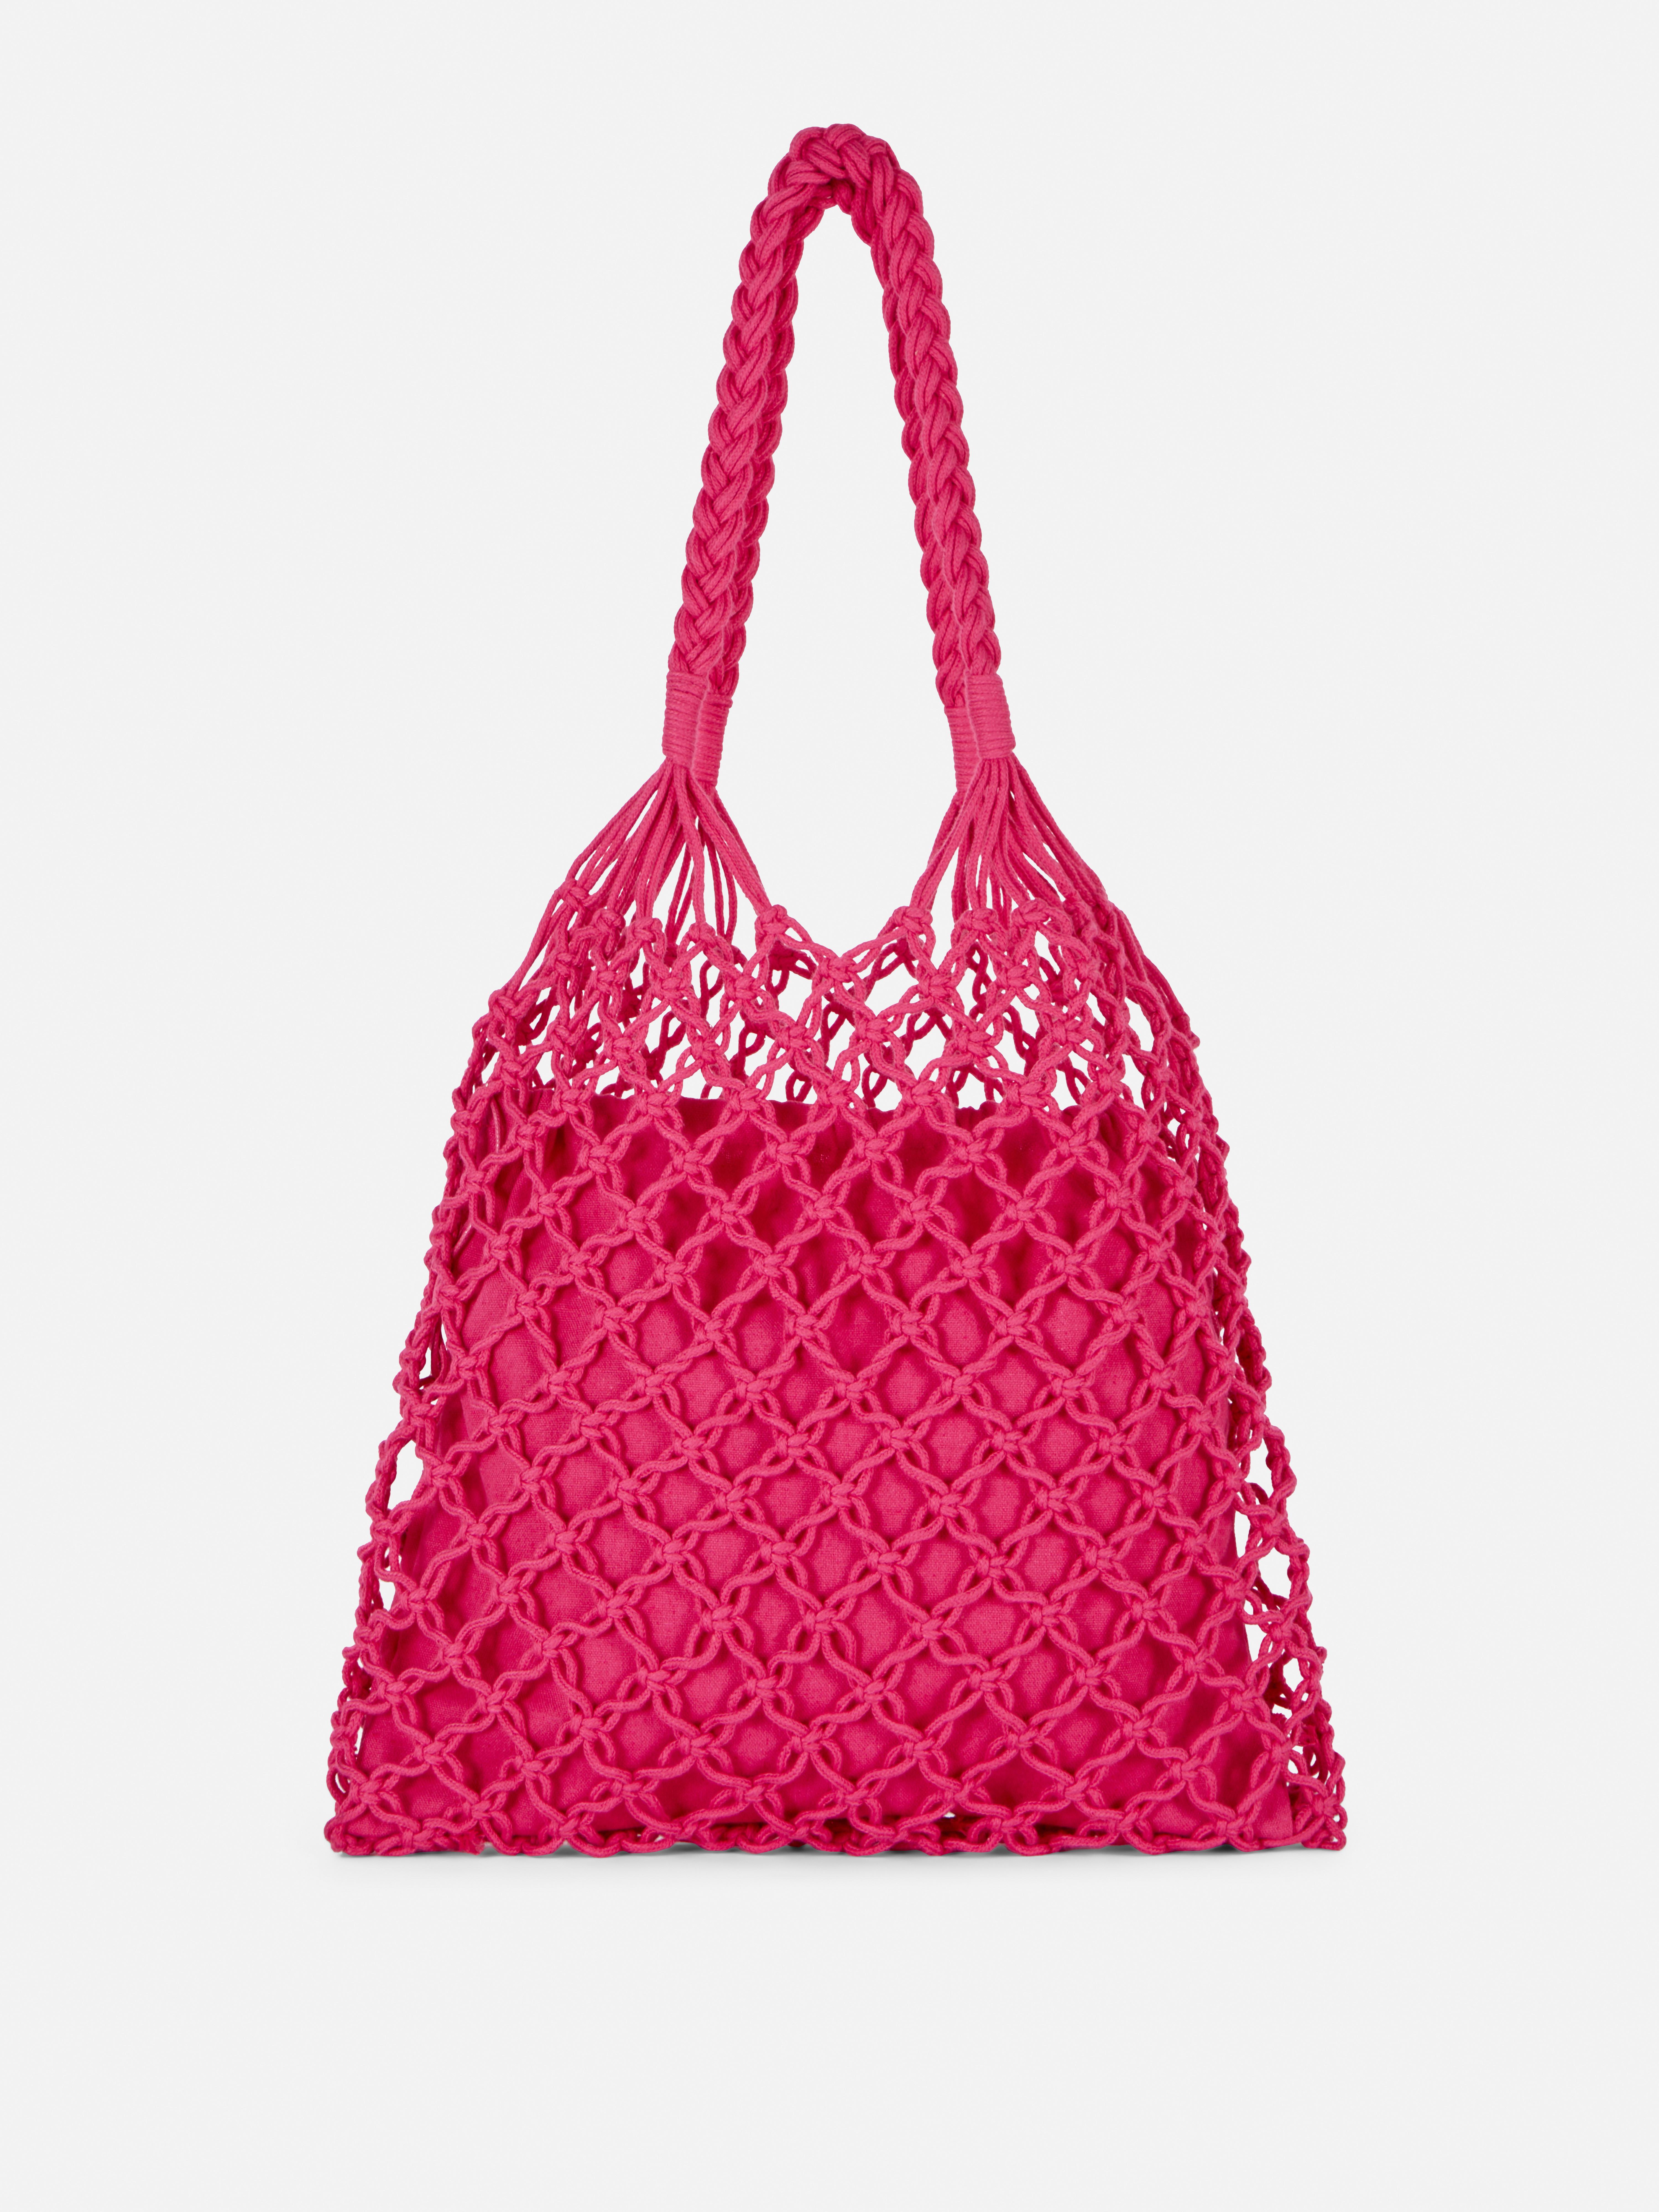 Crochet Shoppe Bags